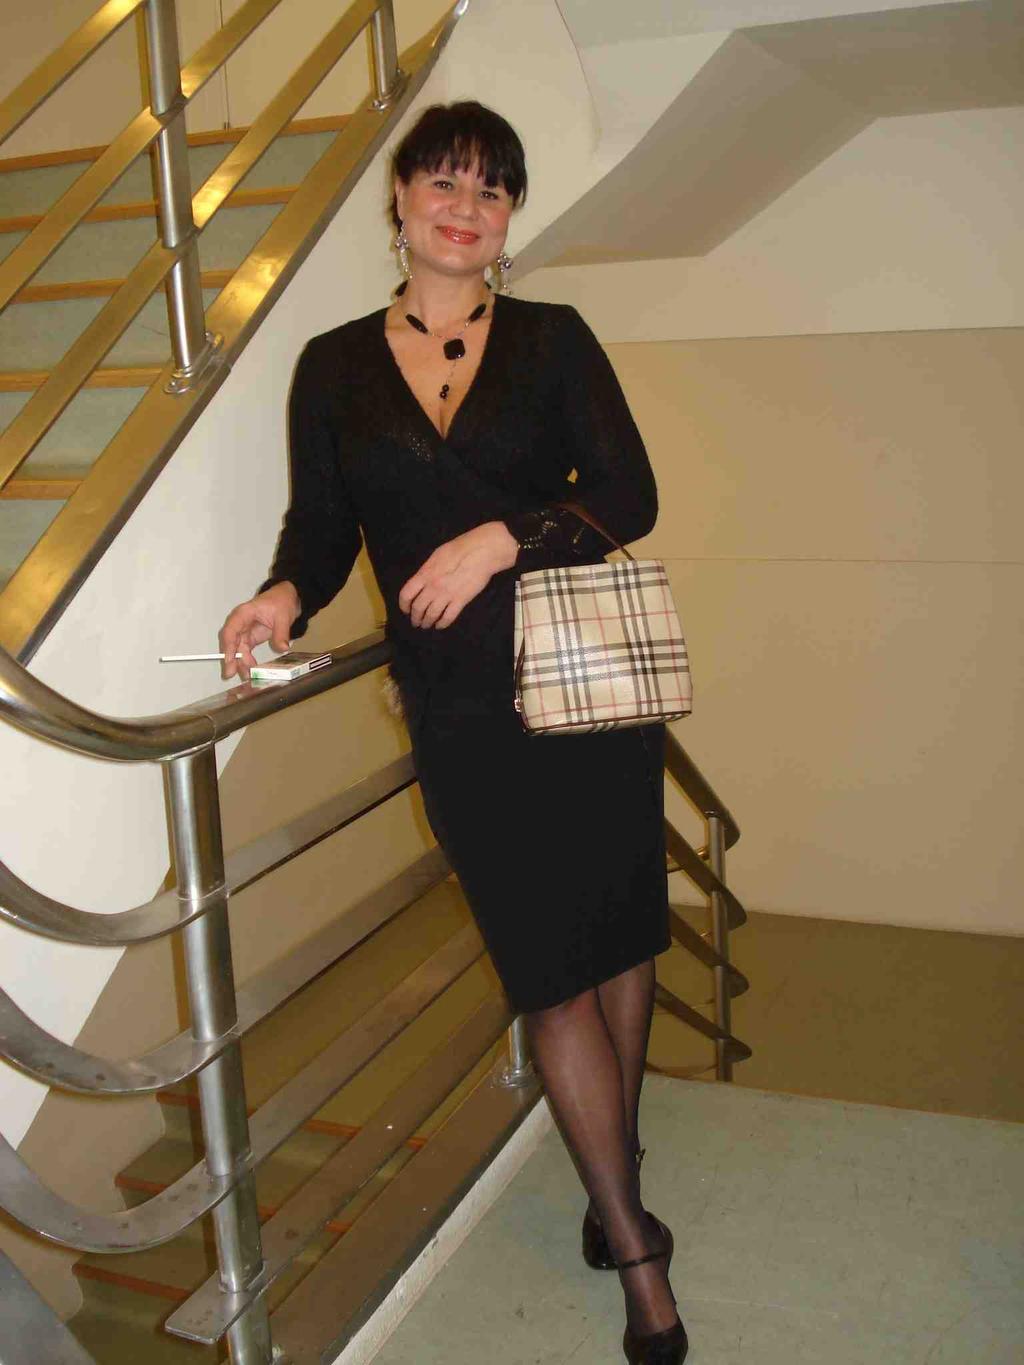 liftul Simona Şerban (din volumul O femeie frumoasă cu pălăria strânsă spre ceafă ) şase grade de libertate seara, la o oră care nu aparţine ecranului cineva îmi recunoaşte aparent cele şase grade de